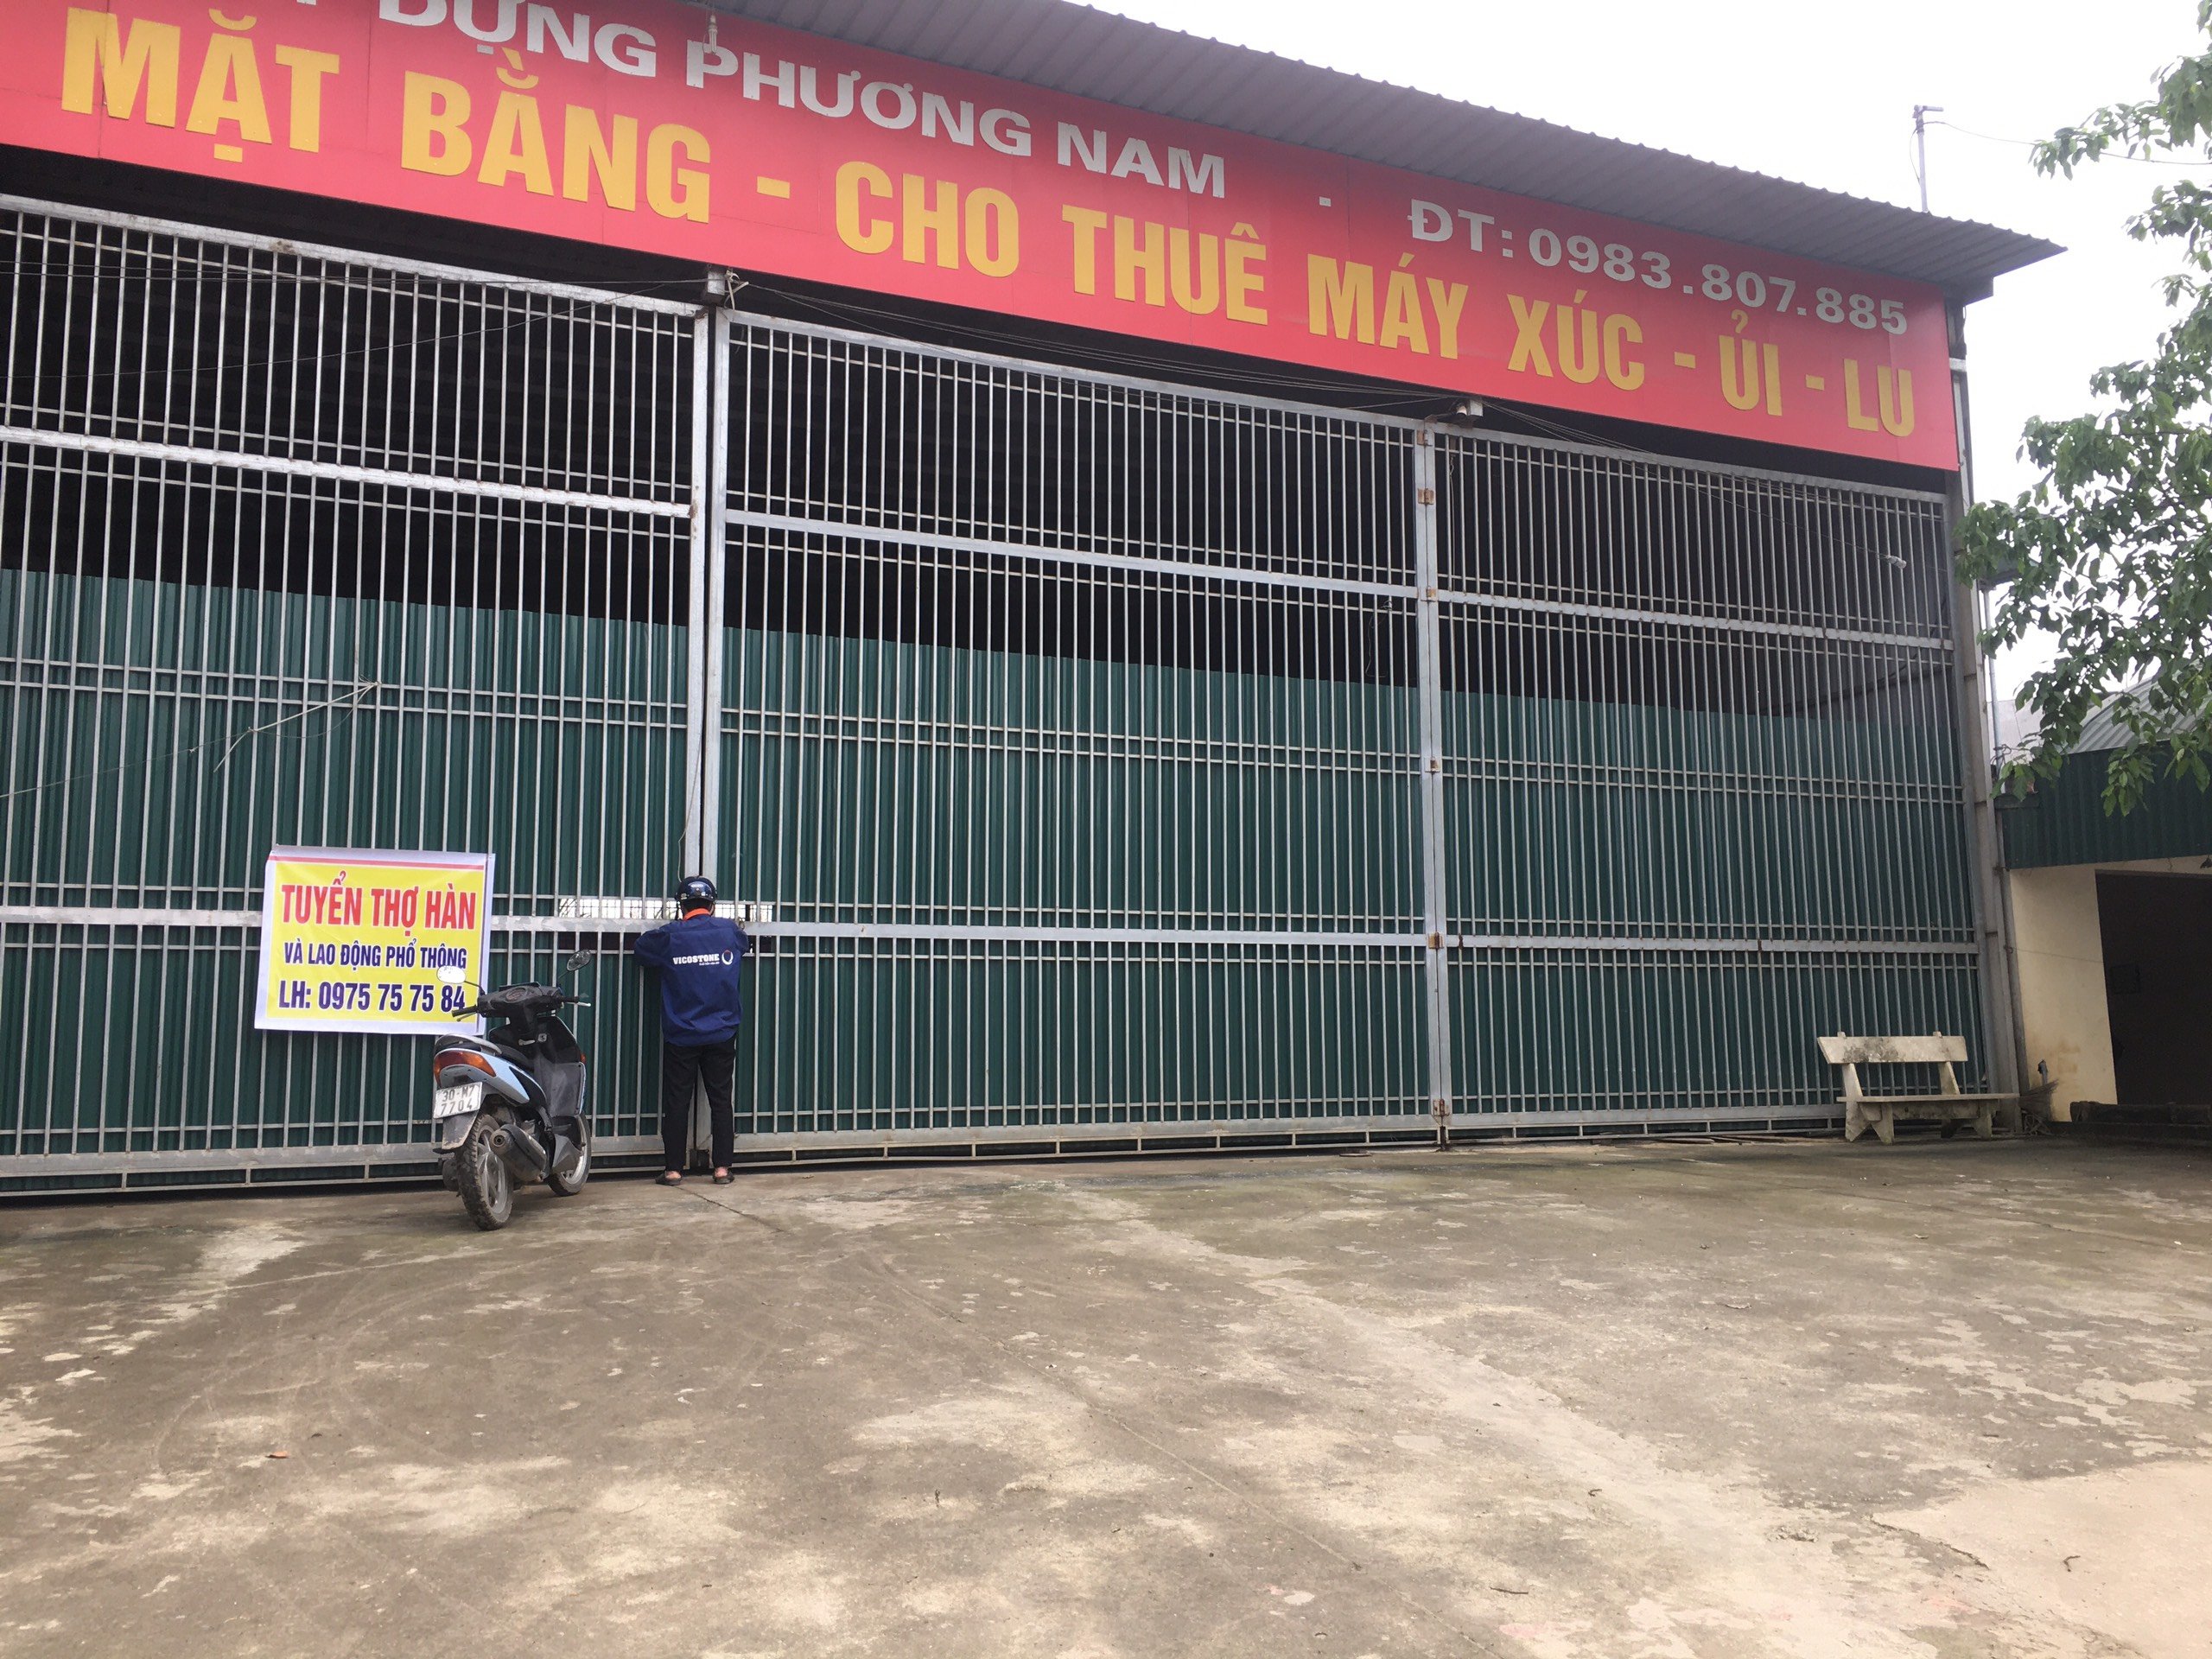 Cho Thuê xưởng 500 m2 tại đại lộ Thăng Long, Hà Nội